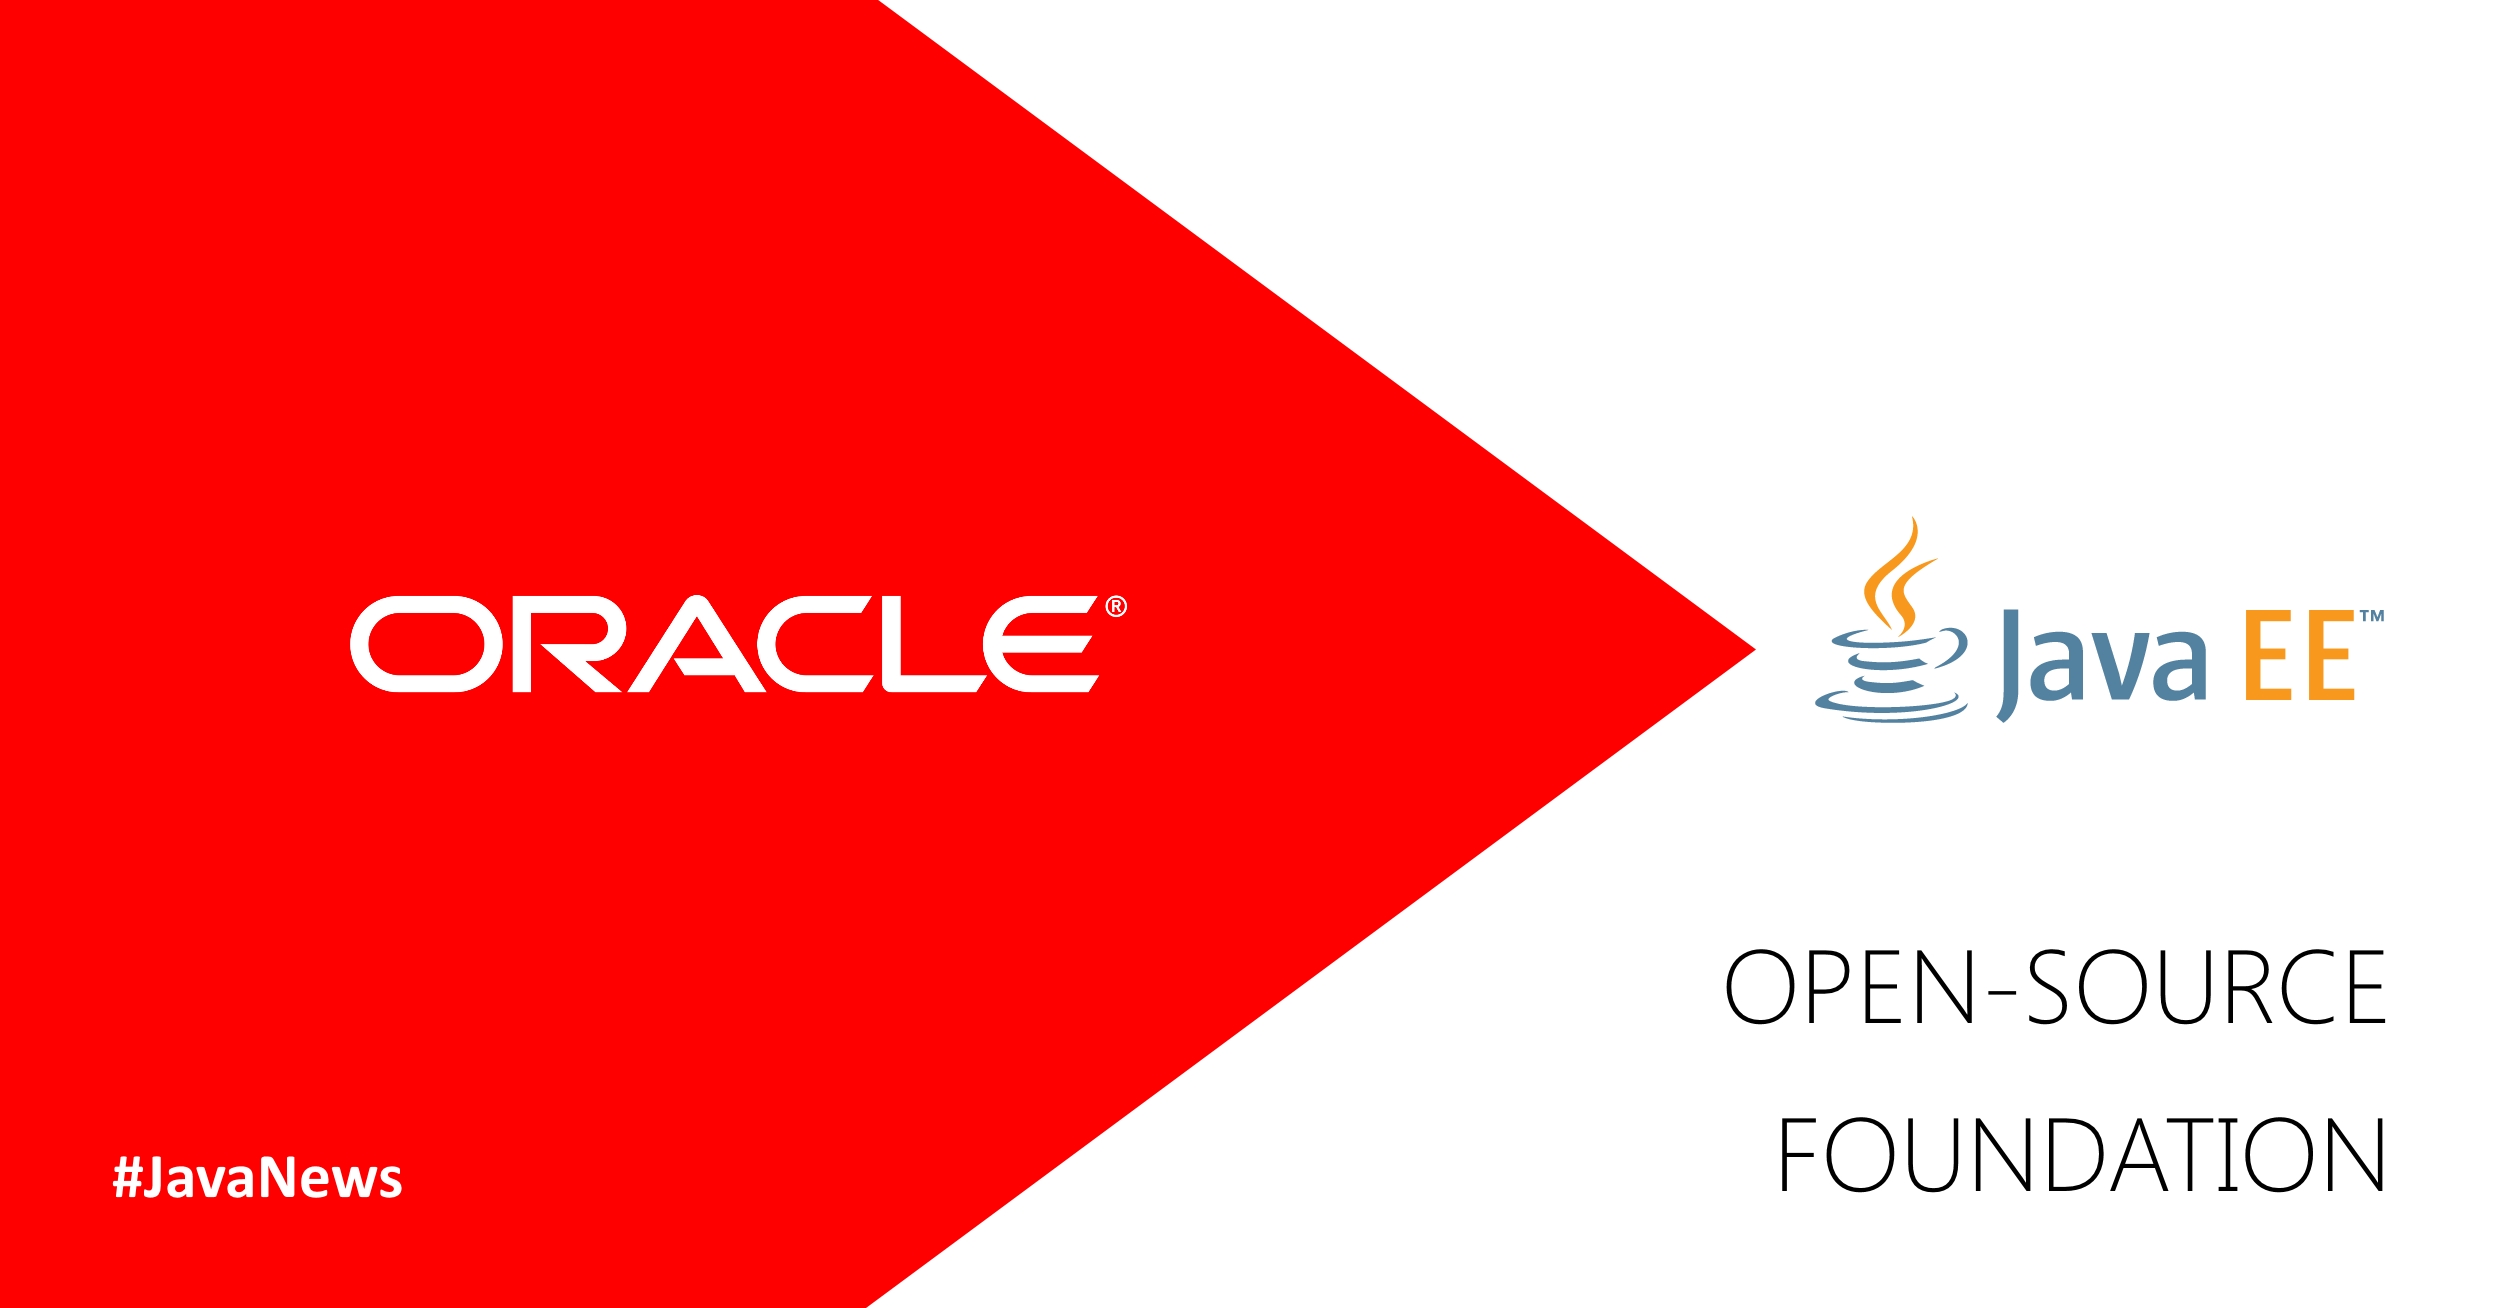 Oracle is Making Java EE Open